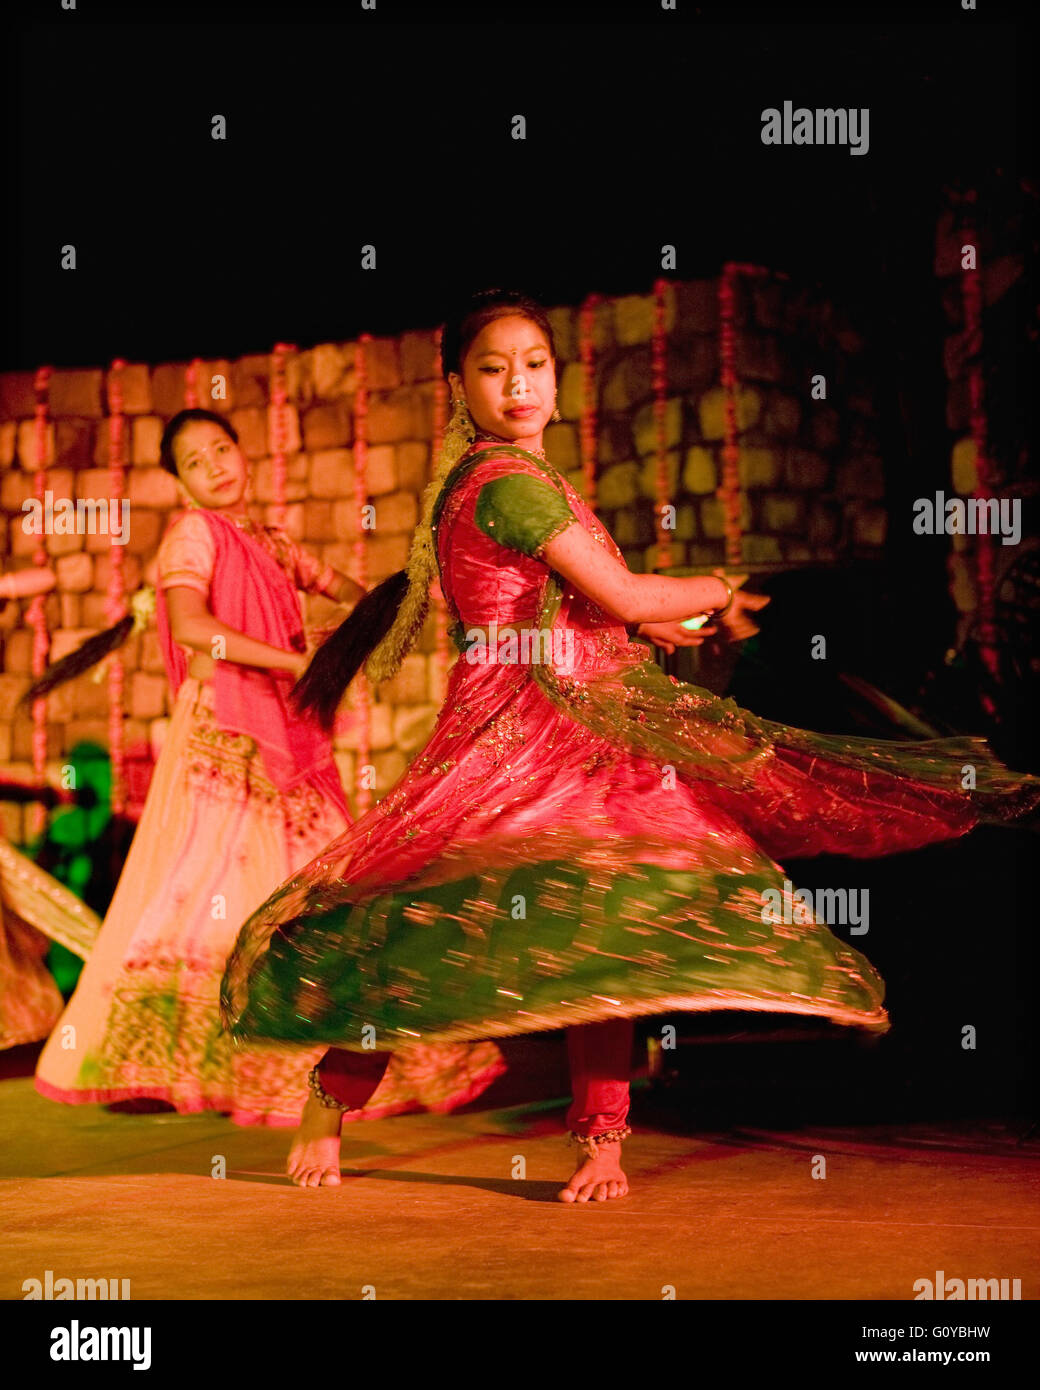 Une troupe de danse locale d'adolescents orphelins effectue des danses folkloriques traditionnelles indiennes. Ananda dans l'Himalaya. L'Inde Banque D'Images